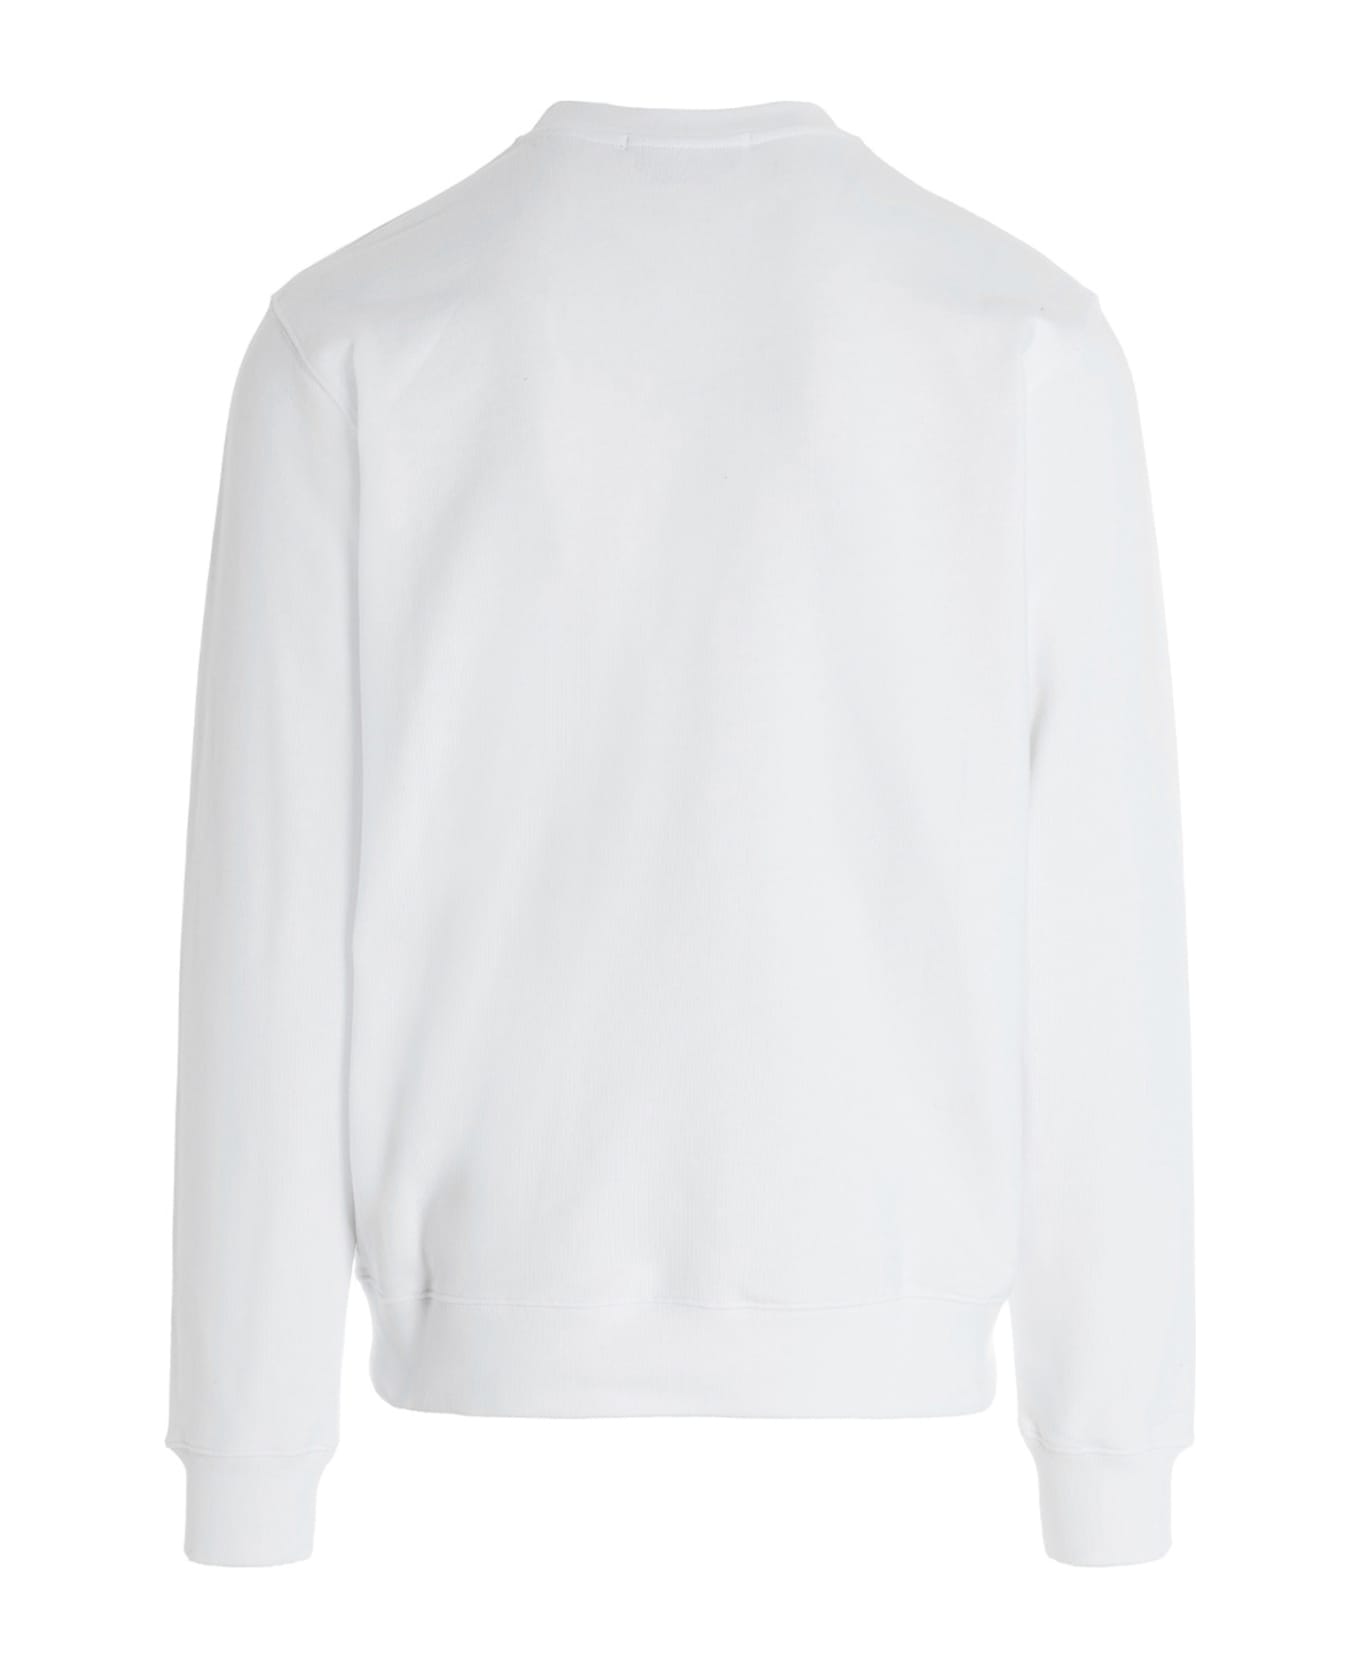 MSGM Logo Sweatshirt - White/Black